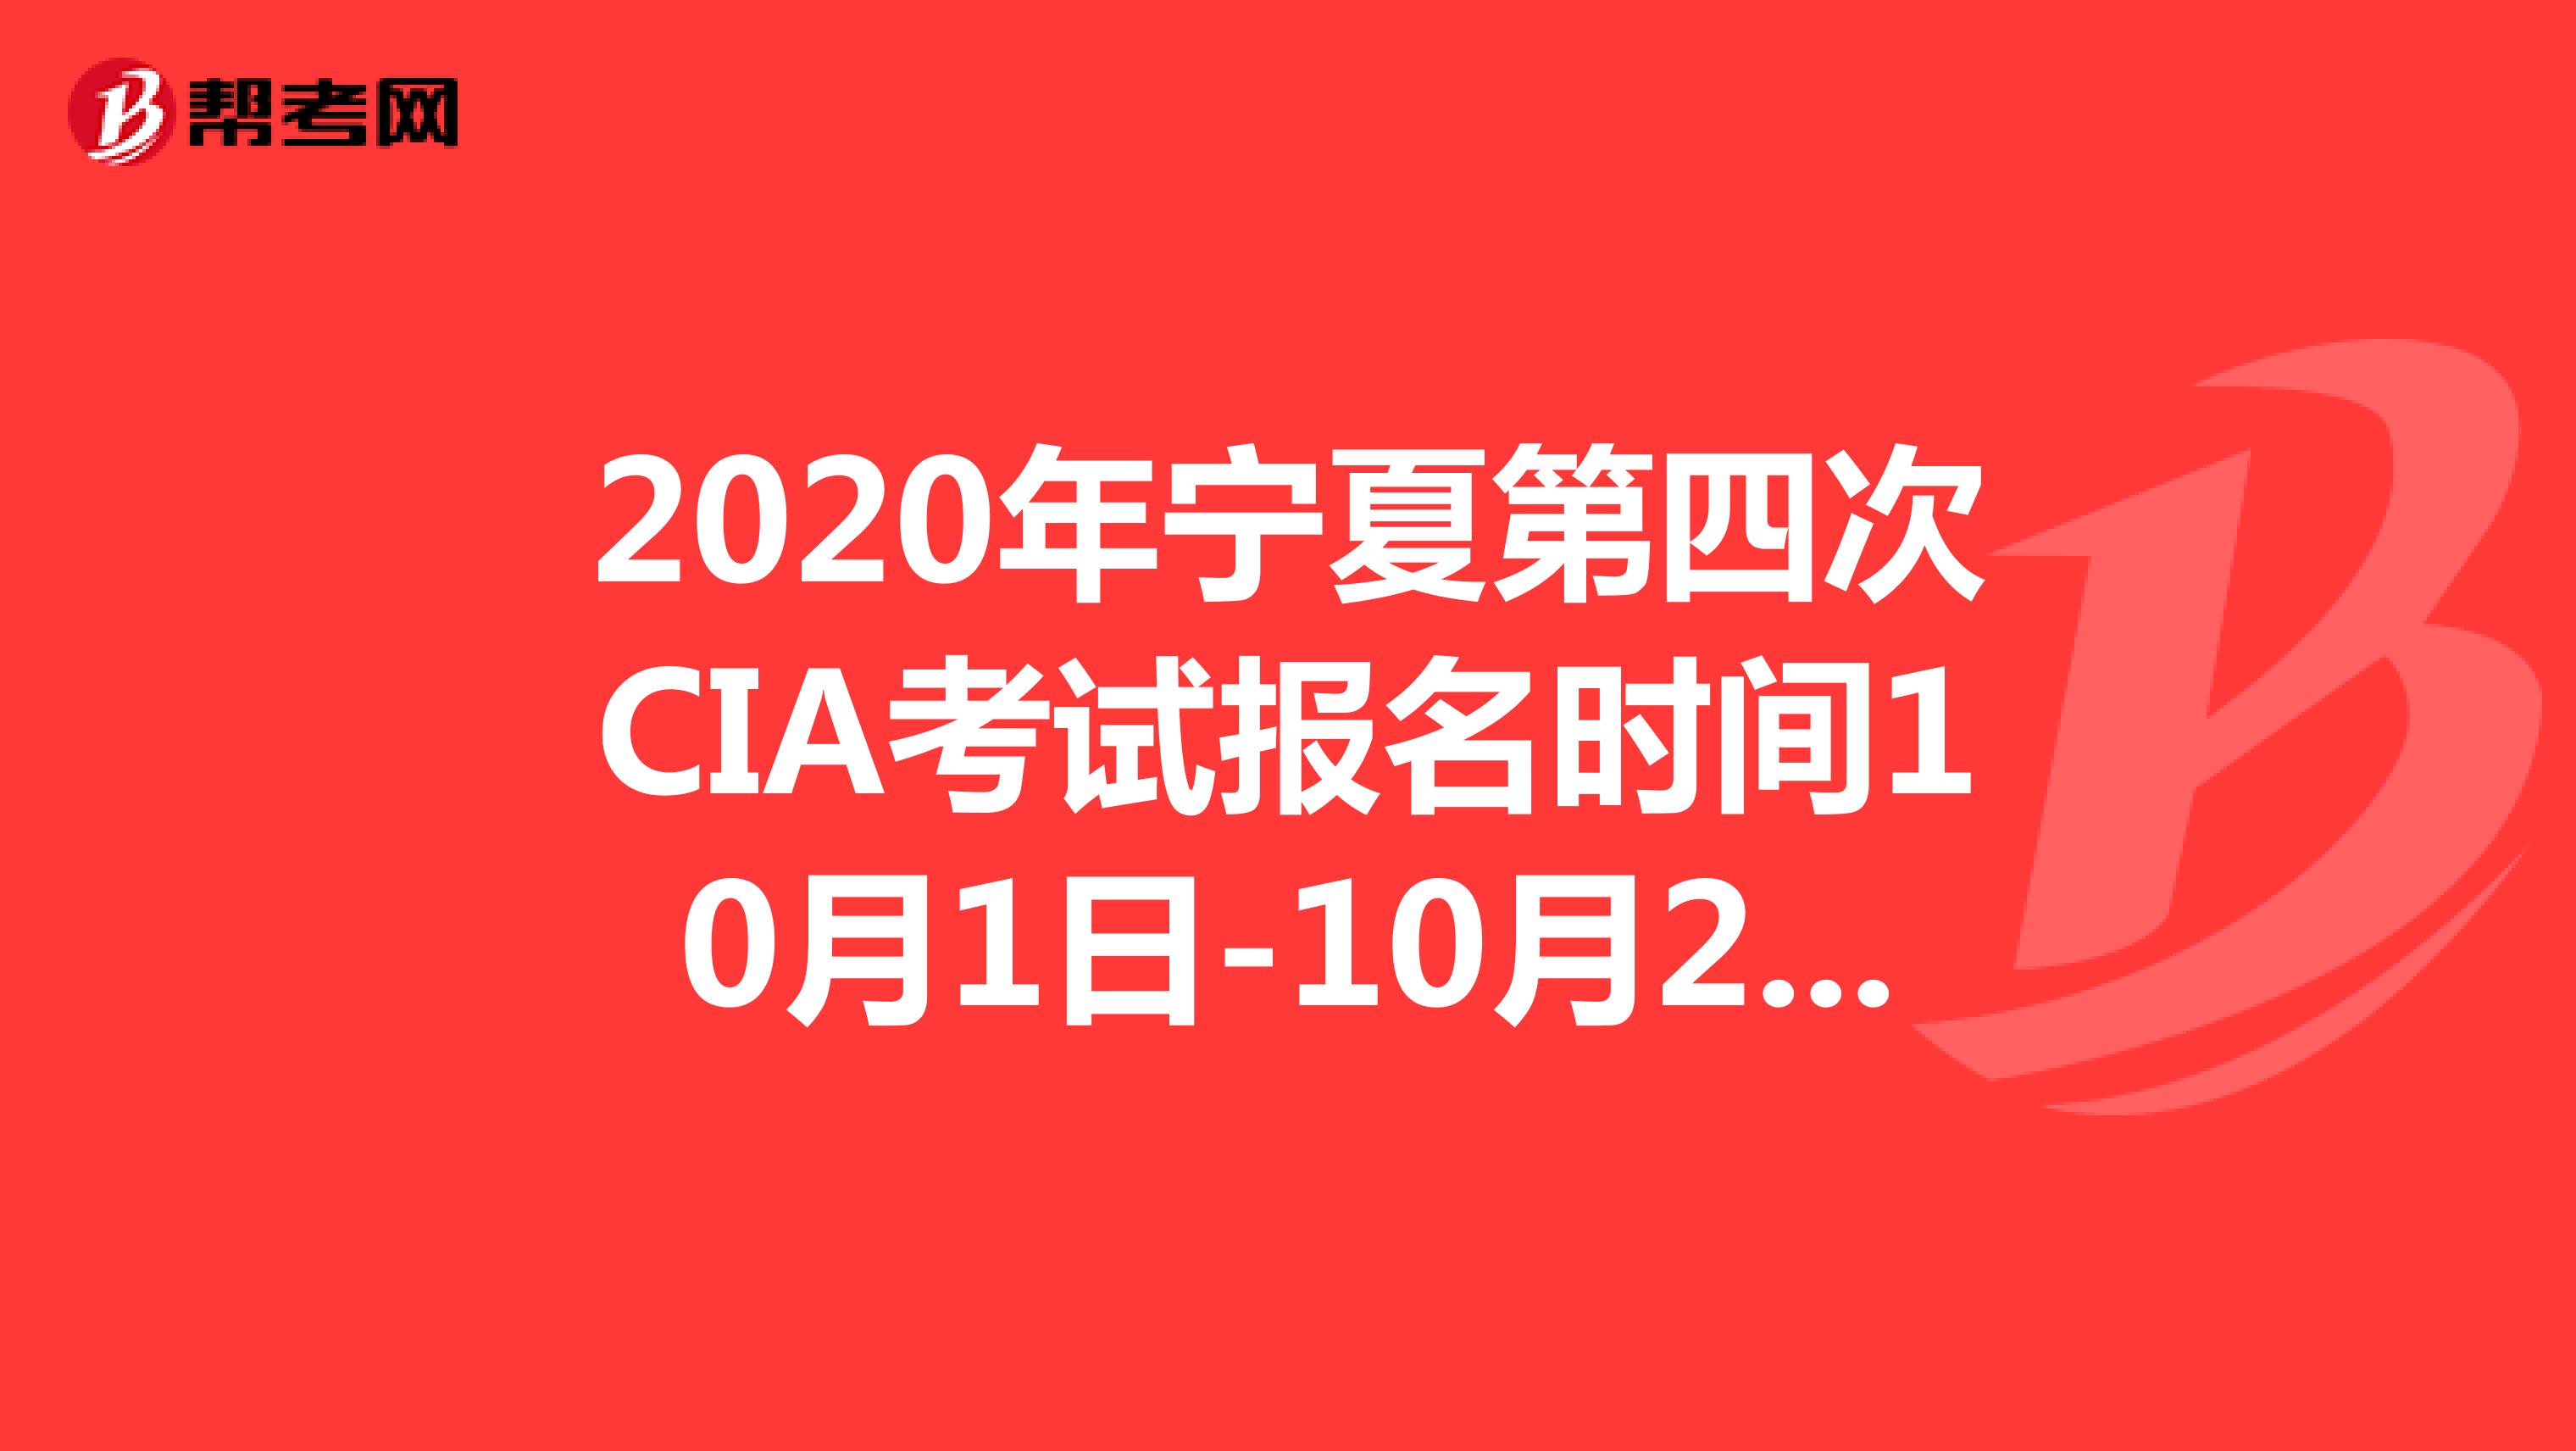 2020年宁夏第四次CIA考试报名时间10月1日-10月20日